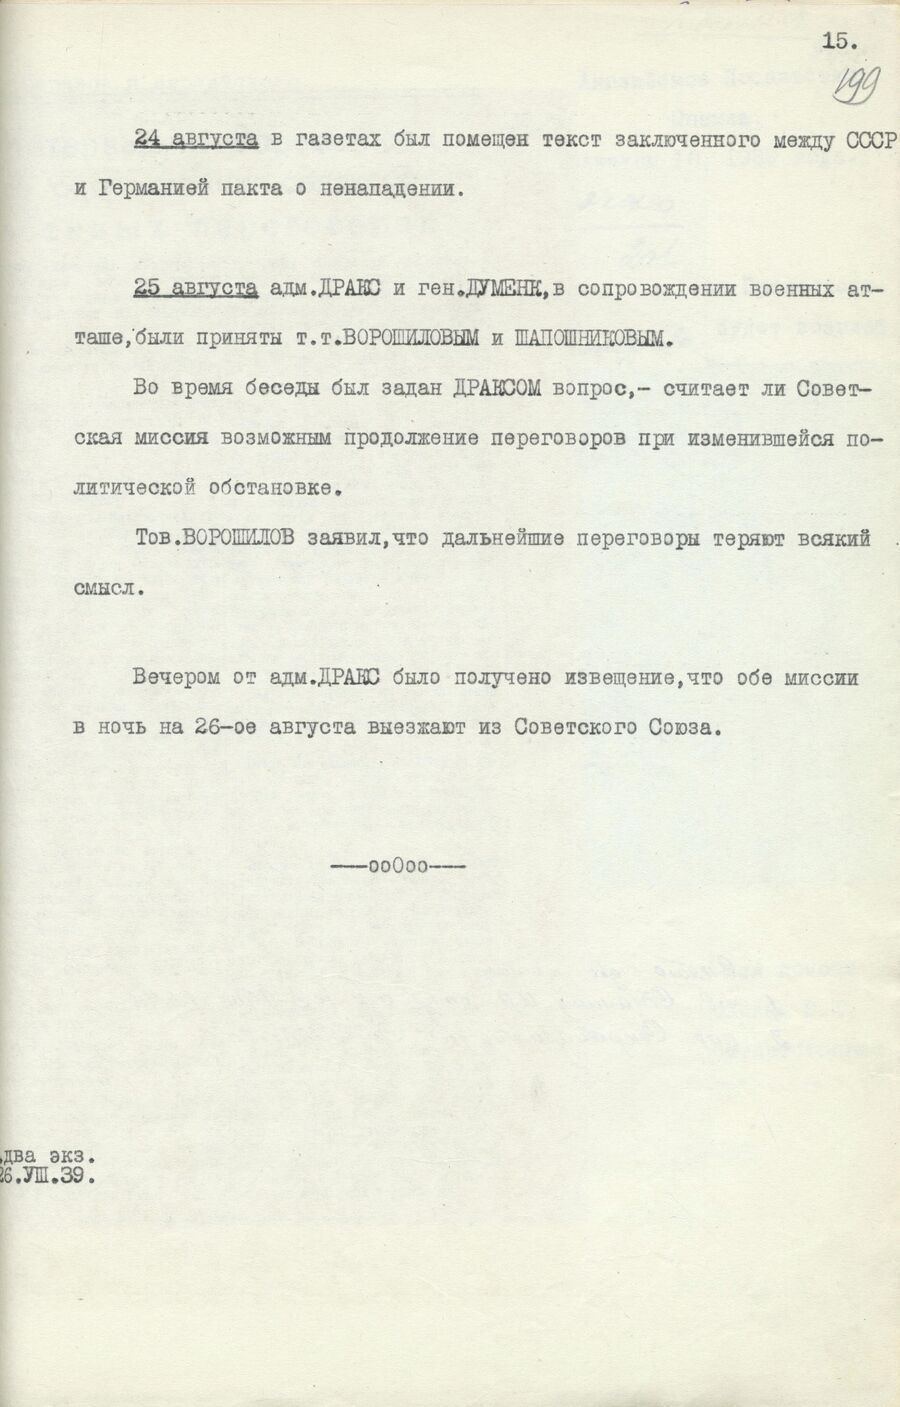 1939.08.26 Отчет о работе совещания. Лист 15